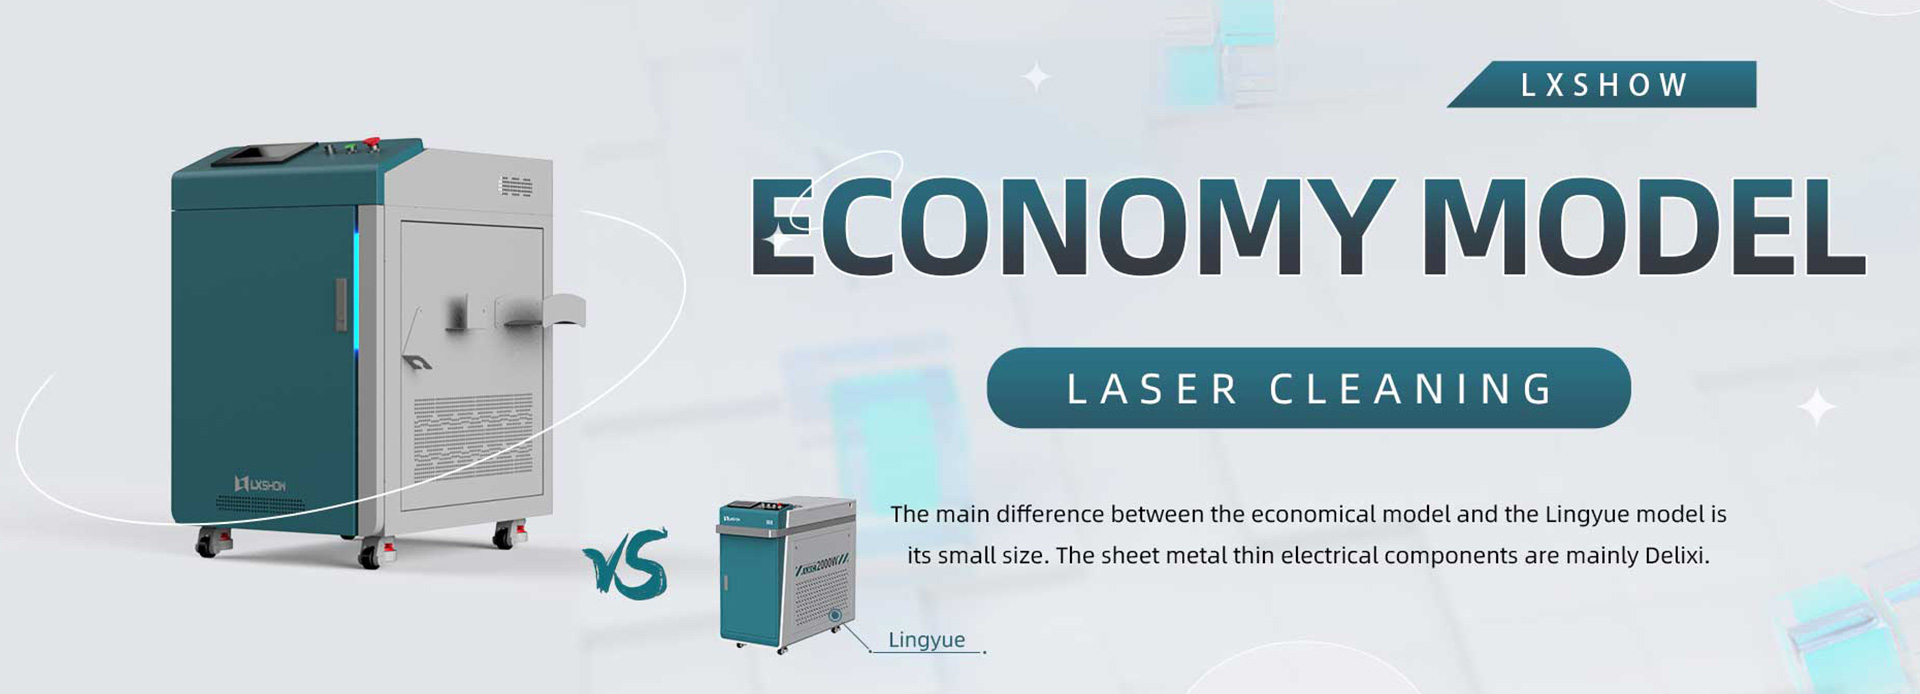 Máy làm sạch bằng laser kiểu kinh tế được thiết kế mới với giá rẻ để loại bỏ rỉ sét sơn kim loại